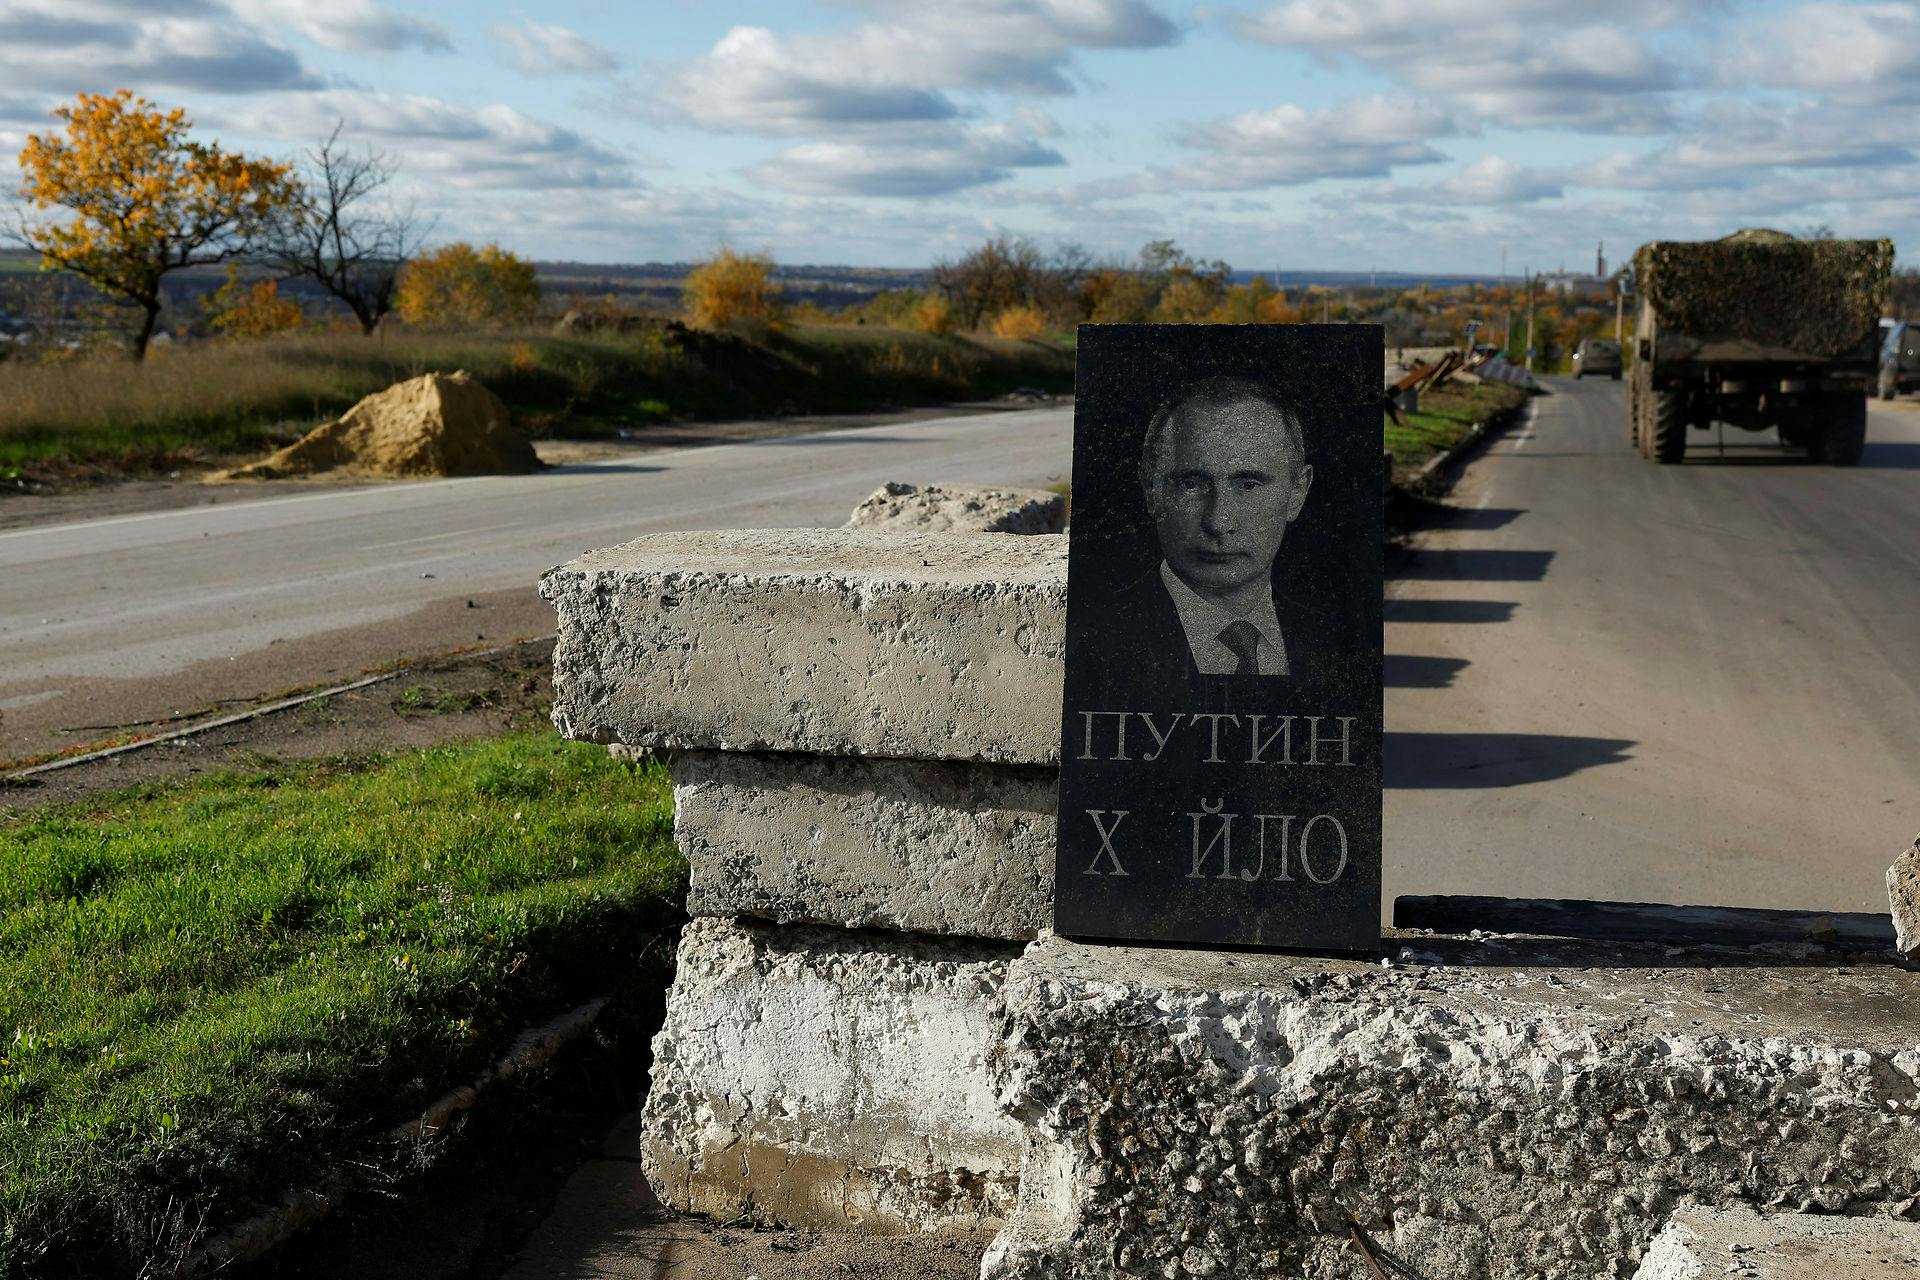 Her har ukrainere sat en gravsten op for Vladimir Putin, som de meget gerne ser under en ægte af slagsen.